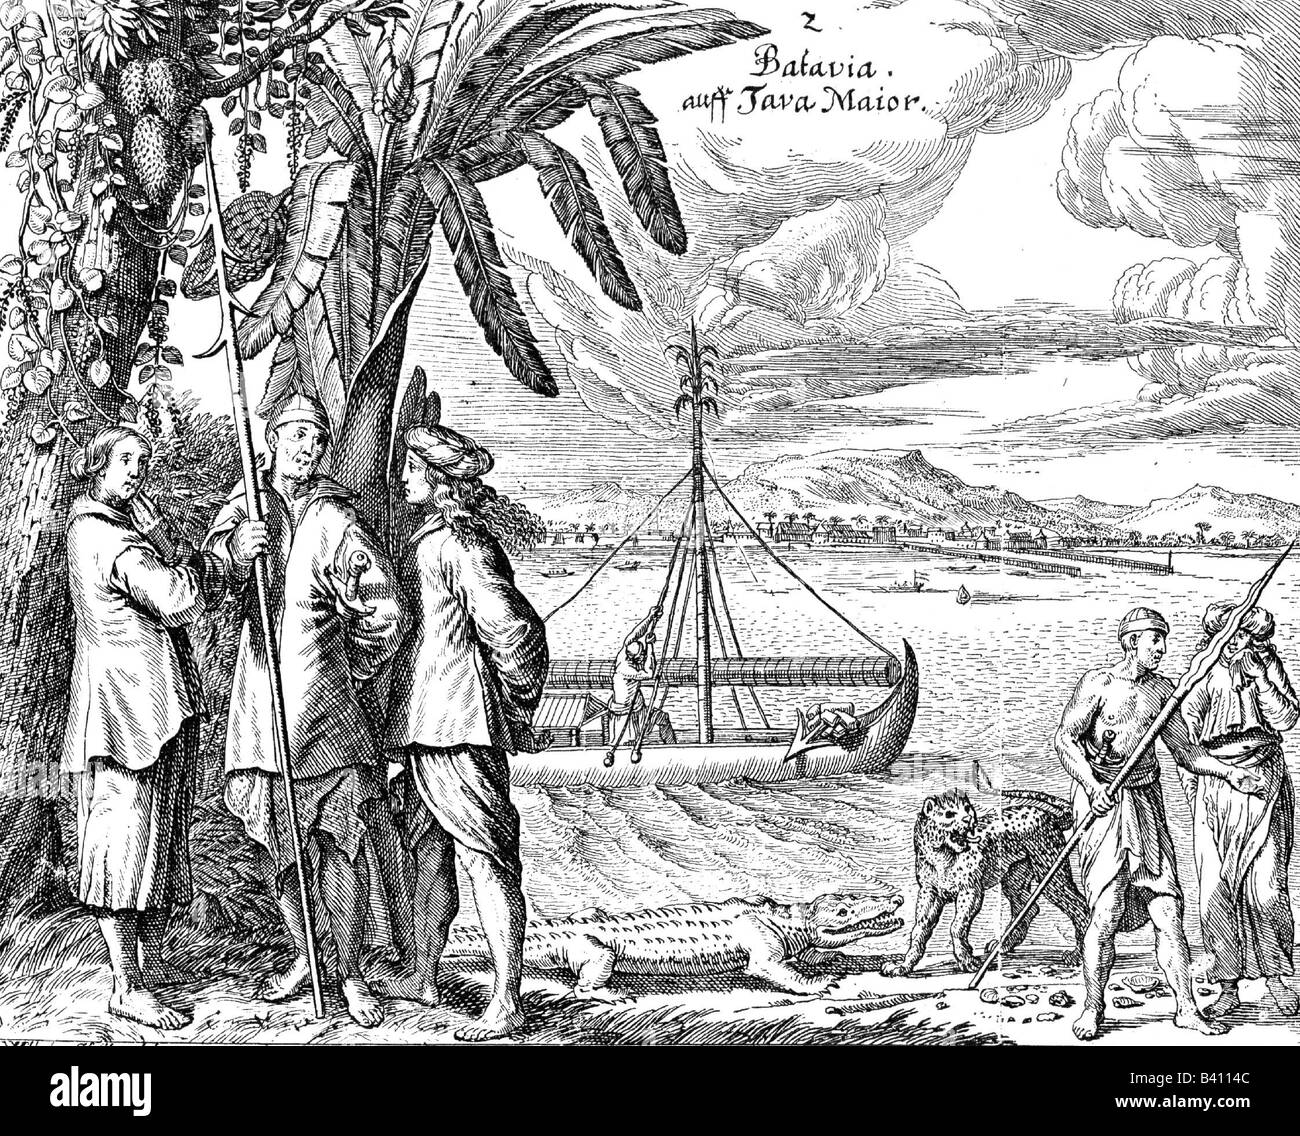 Geografia / viaggio, Indonesia, Giava, Batavia (Jacarta), persone e animali, città sullo sfondo, incisione, 1669, Foto Stock